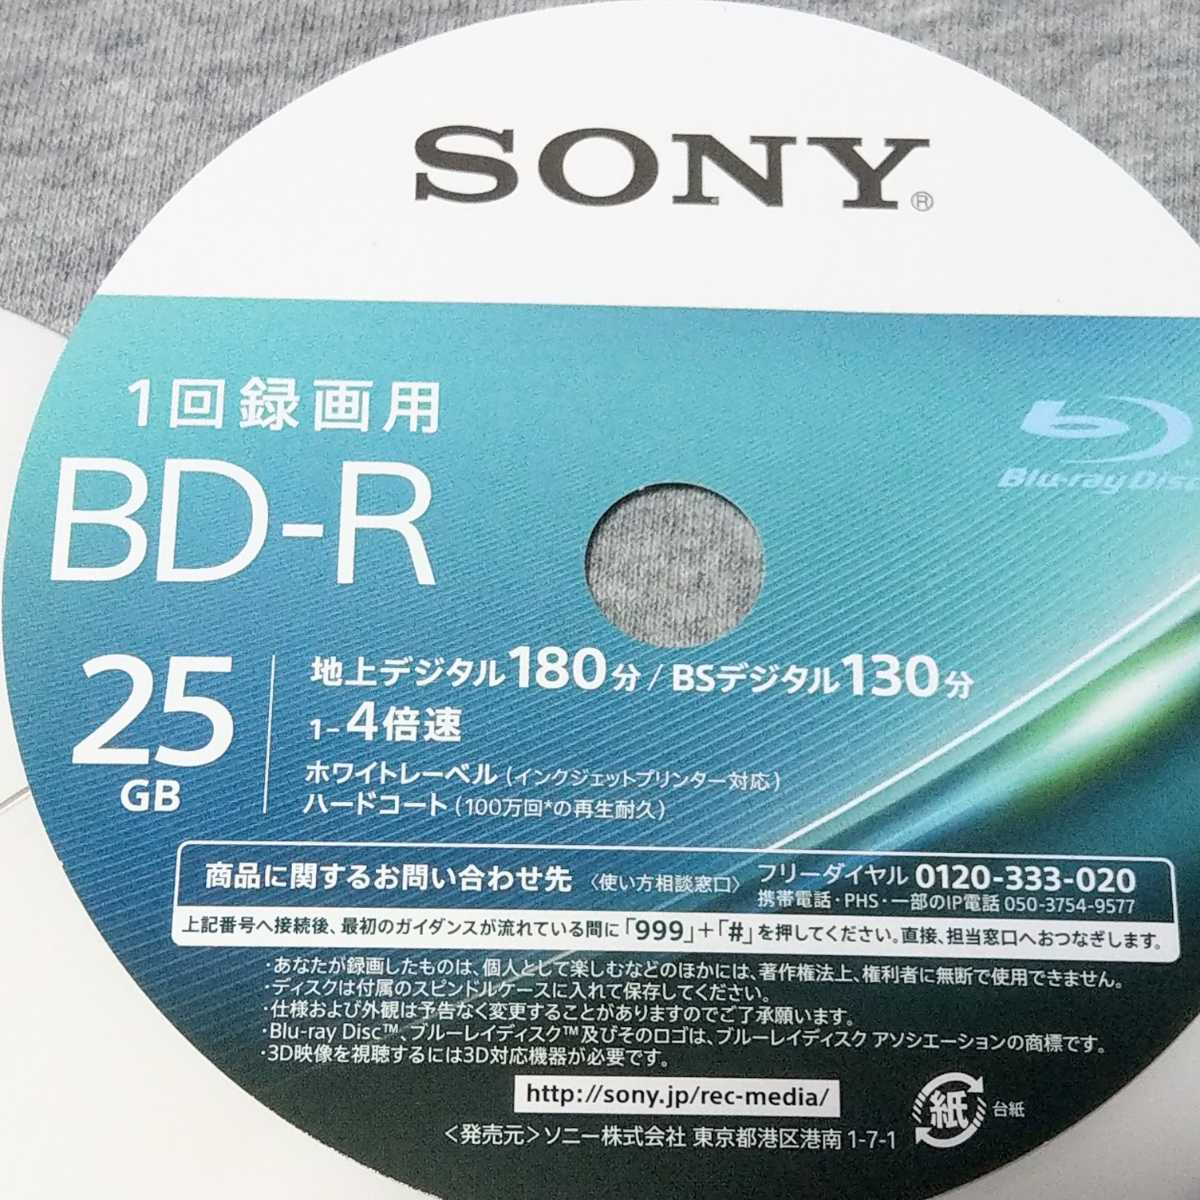 SONY BD-RE 25GB 180分 4枚入×3パック